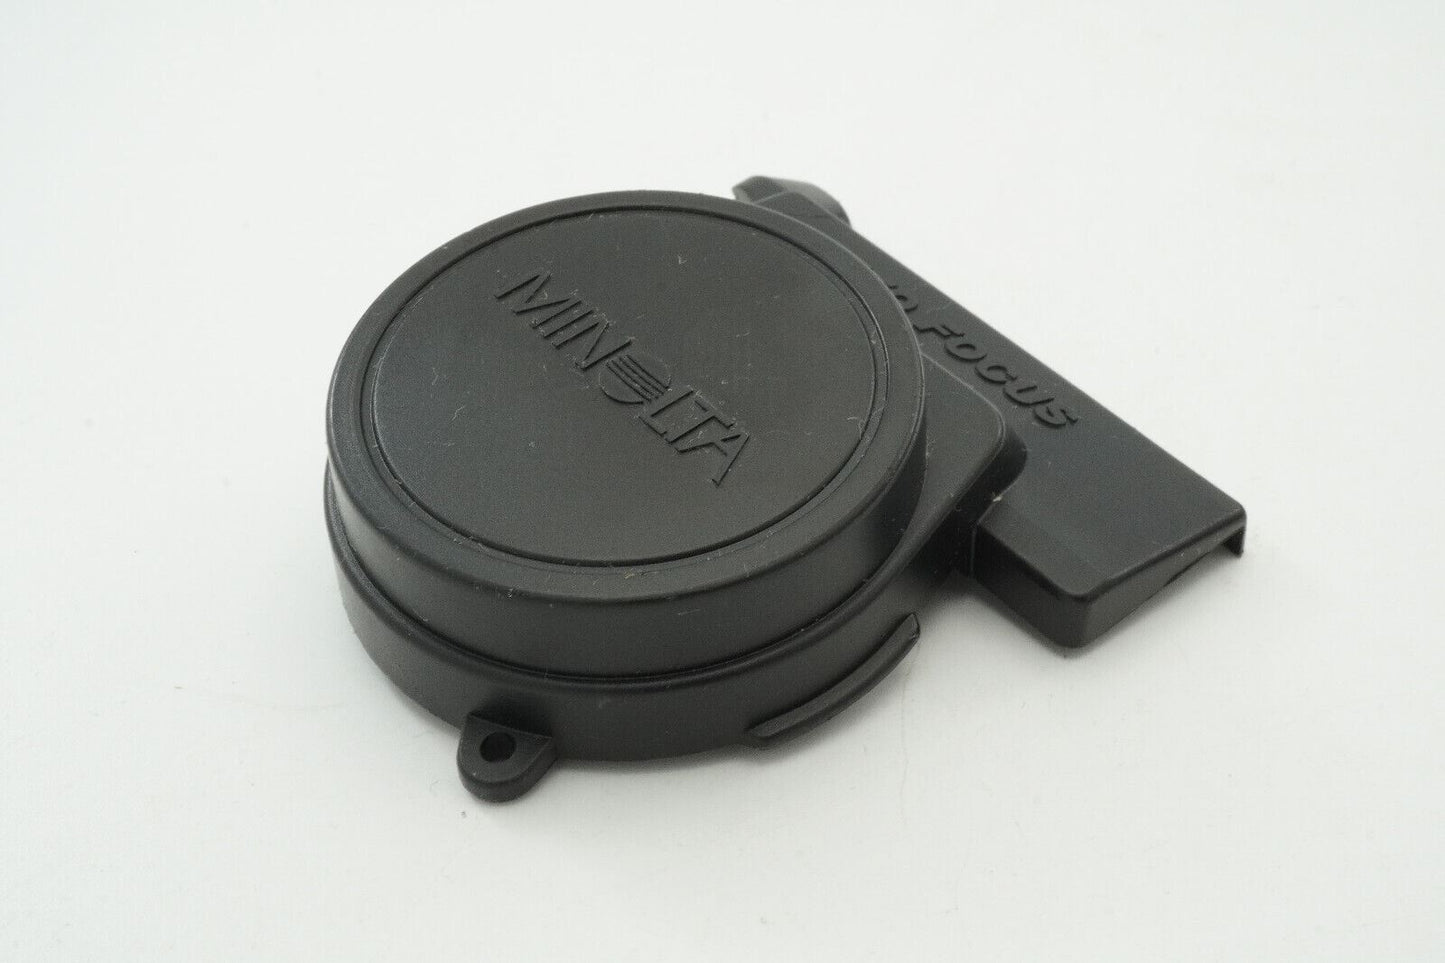 Minolta Hi-Matic AF2 35mm Film Compact Camera Original Lens Cap from Japan #B139